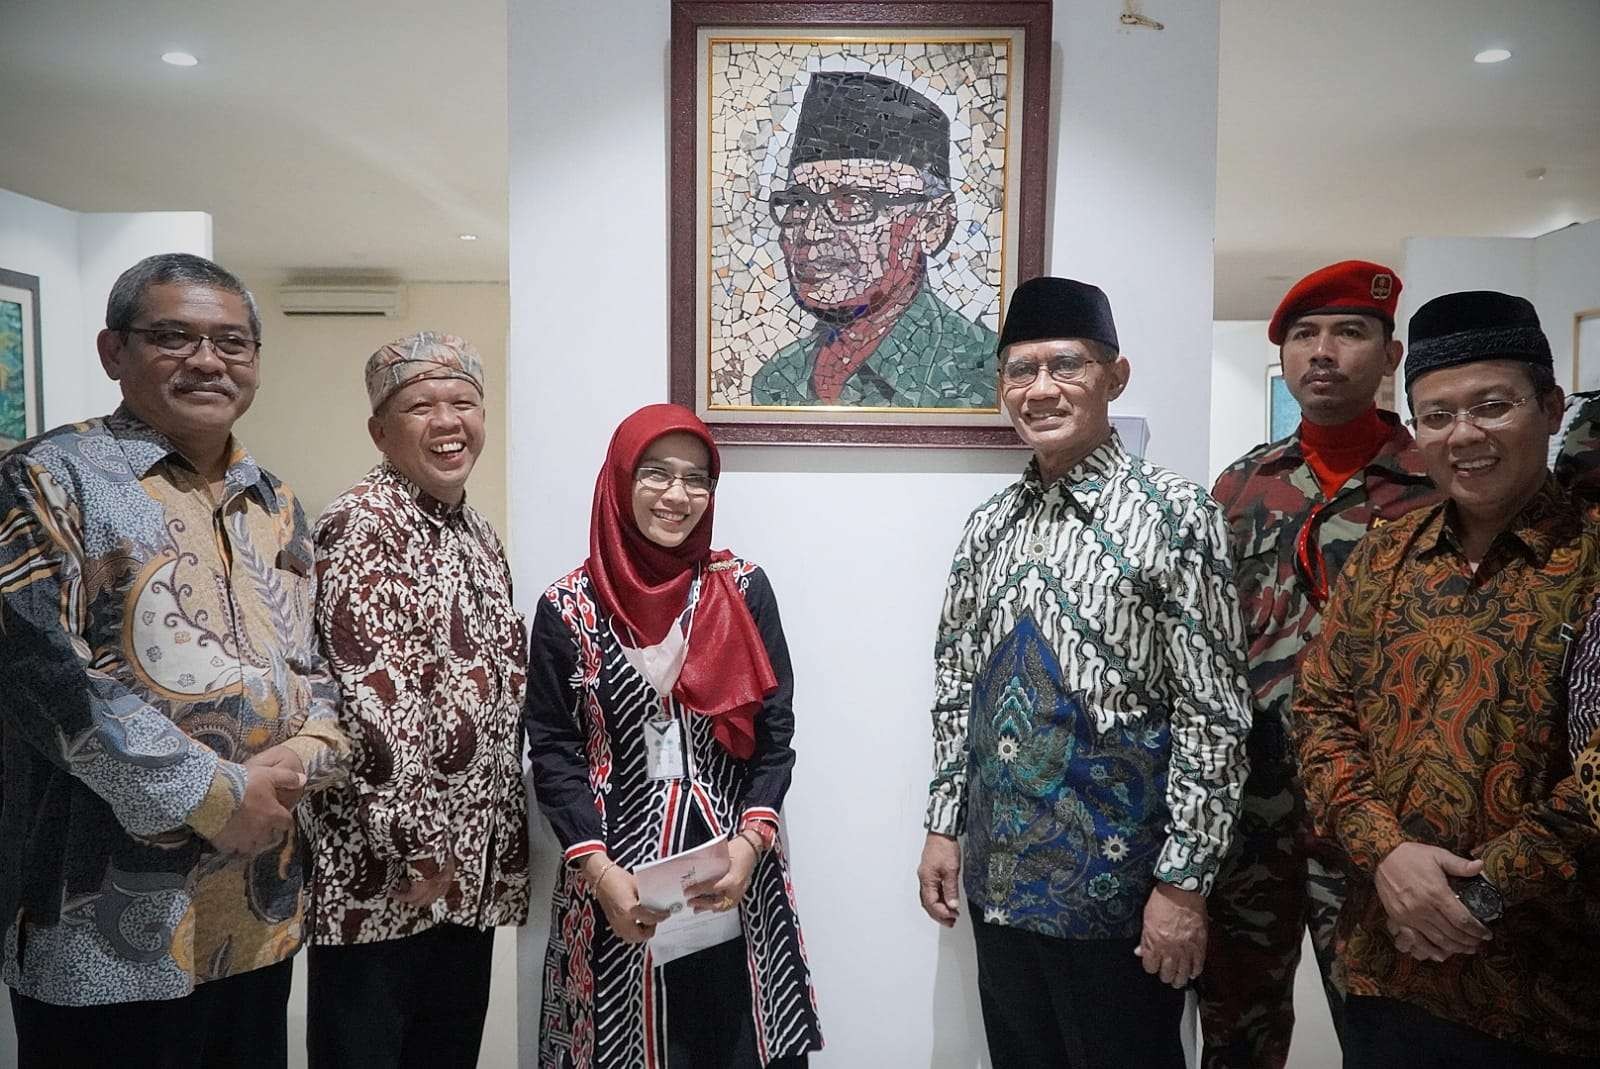 Ketua Umum PP Muhammadiyah Haedar Nashir di antara kader-kader organisasi yang dipimpinya di Yogyakarta. (Foto: muhammdiyah.or.id)